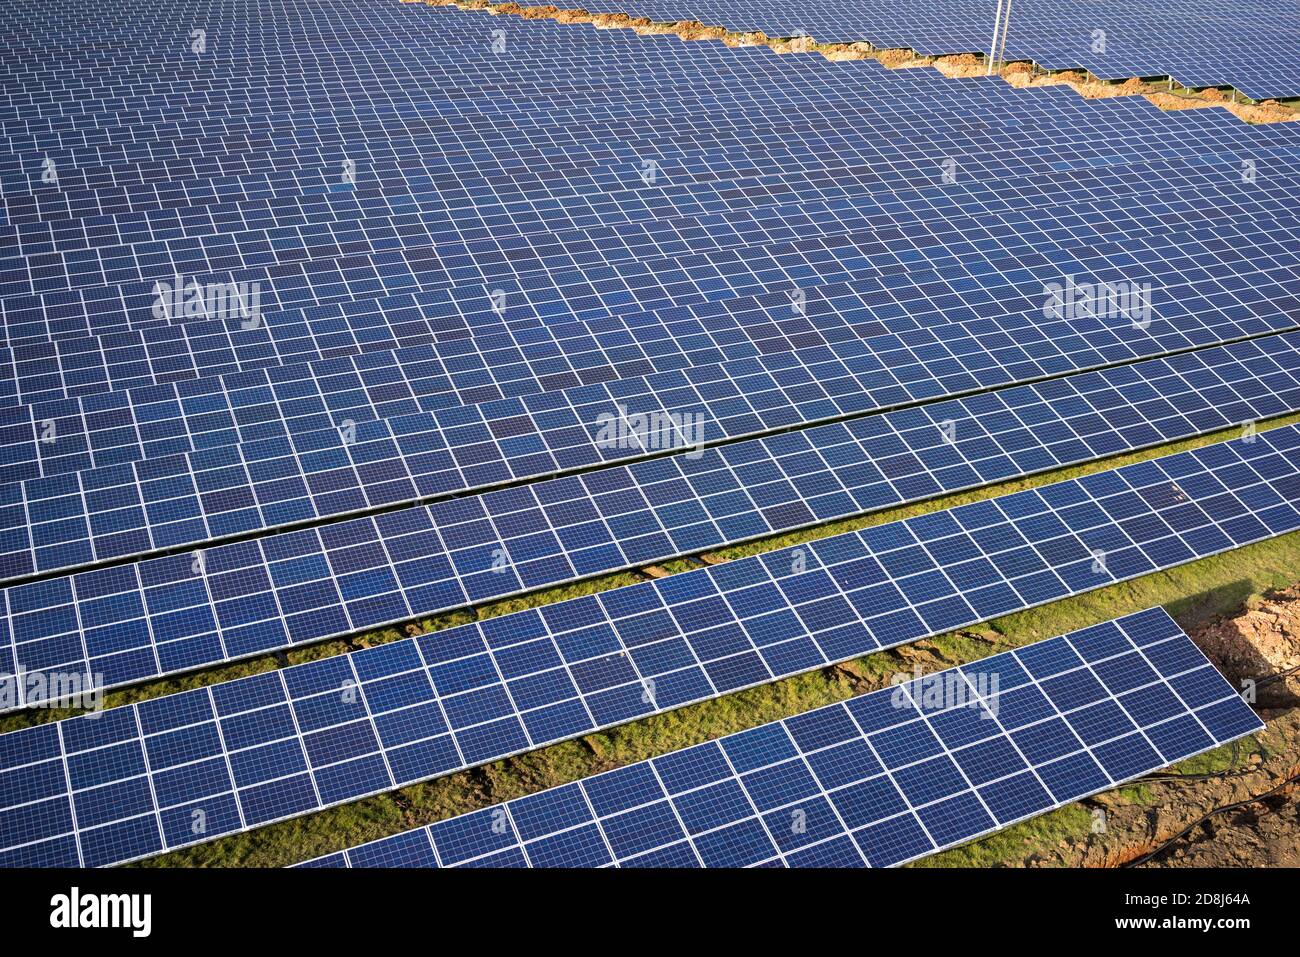 Ferme solaire de 30 acres à mansfield, dans le Nottinghamshire, en Angleterre Banque D'Images